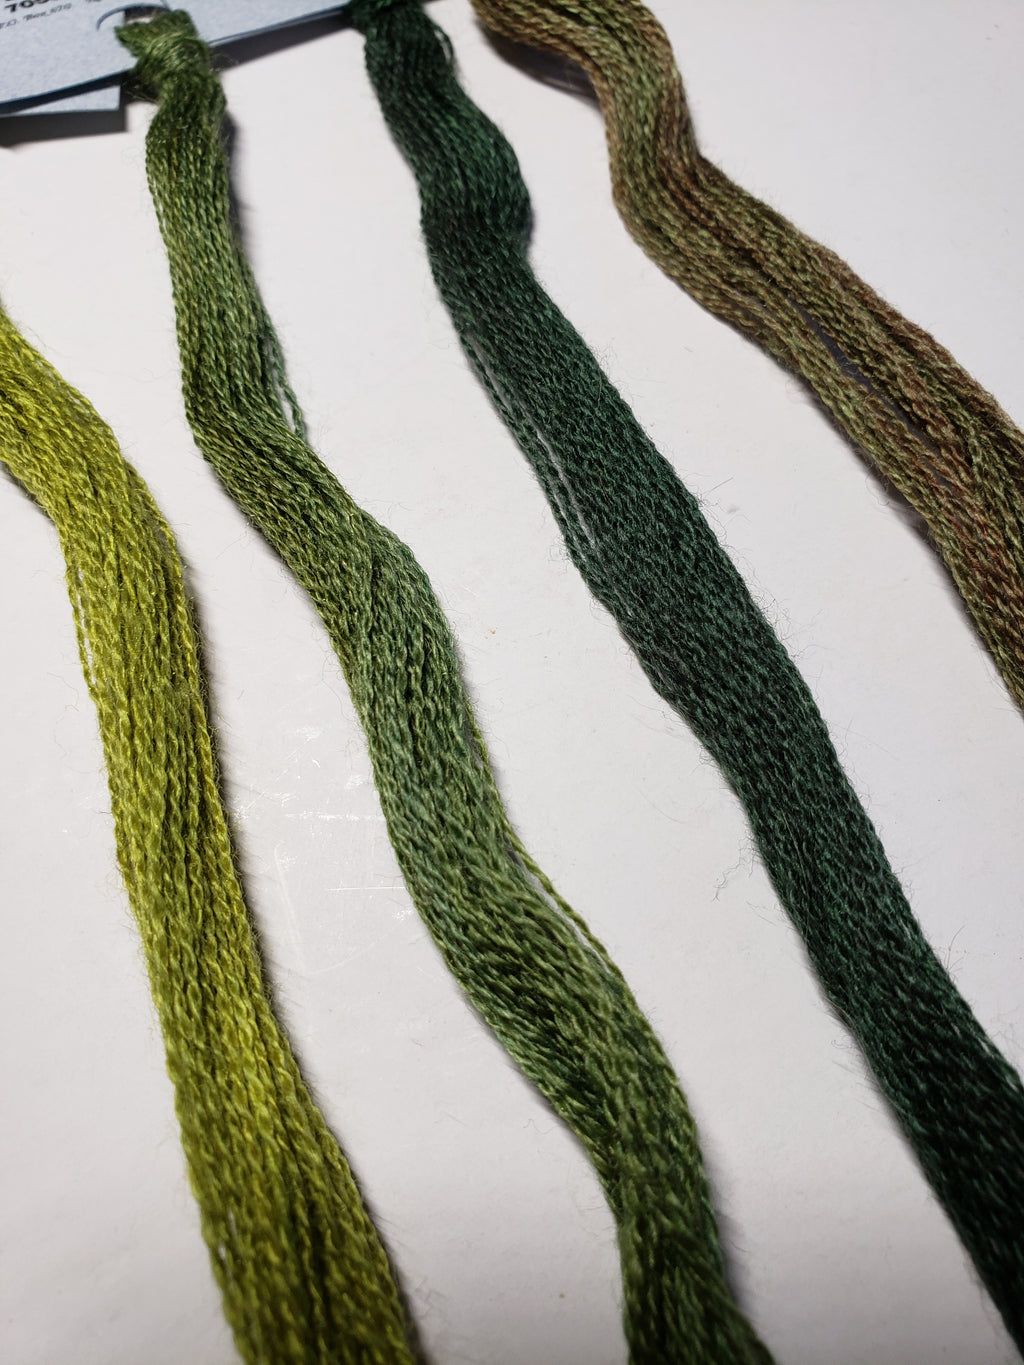 Hand Dyed Wool Thread Dark Green Bundle - Gentle Art Wool Threads - 4 skeins of 10 yards